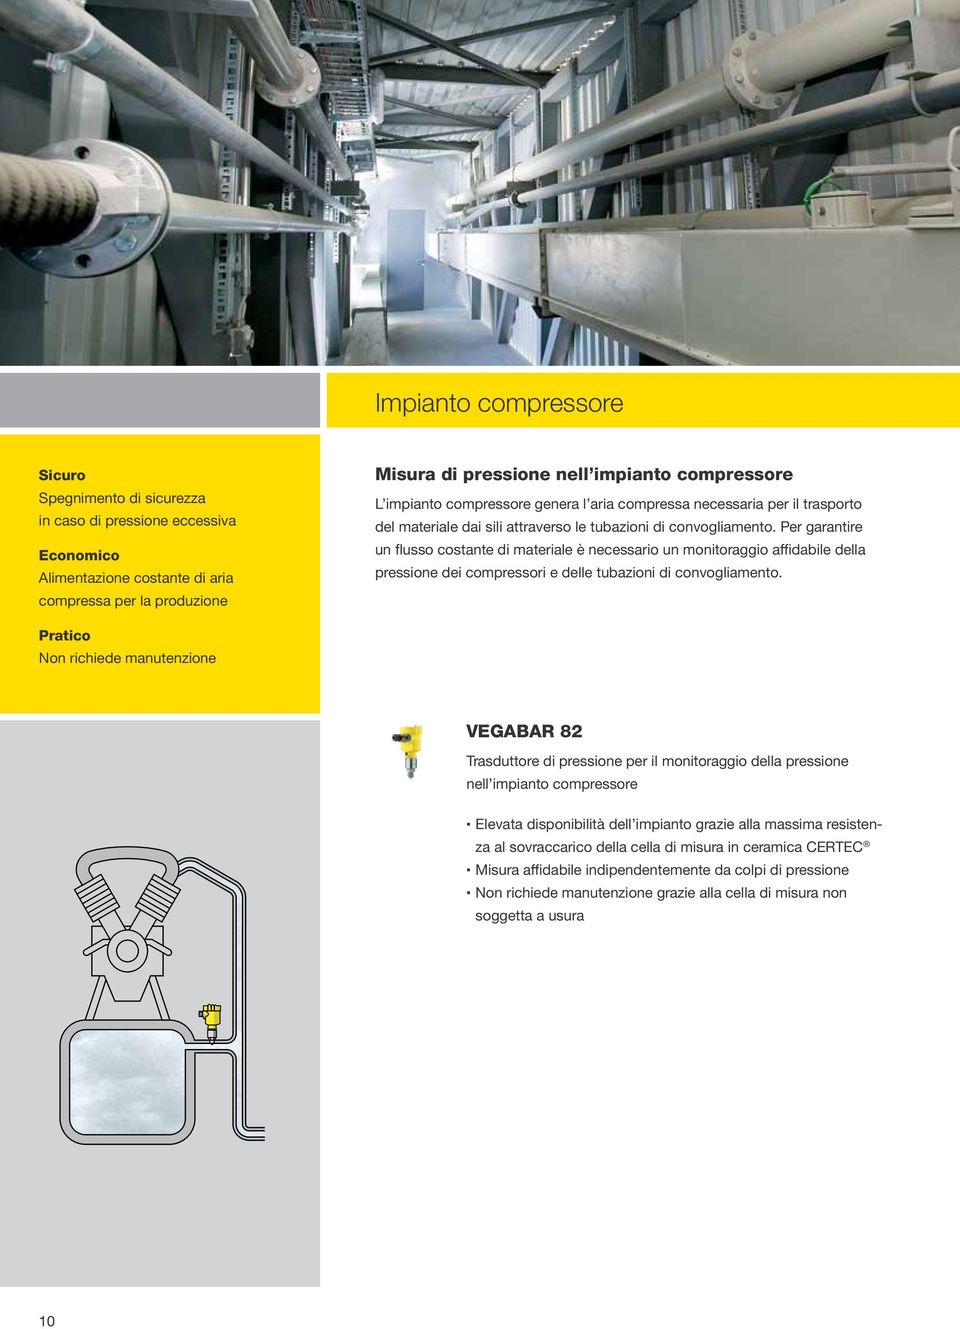 Per garantire un flusso costante di materiale è necessario un monitoraggio affidabile della pressione dei compressori e delle tubazioni di convogliamento.